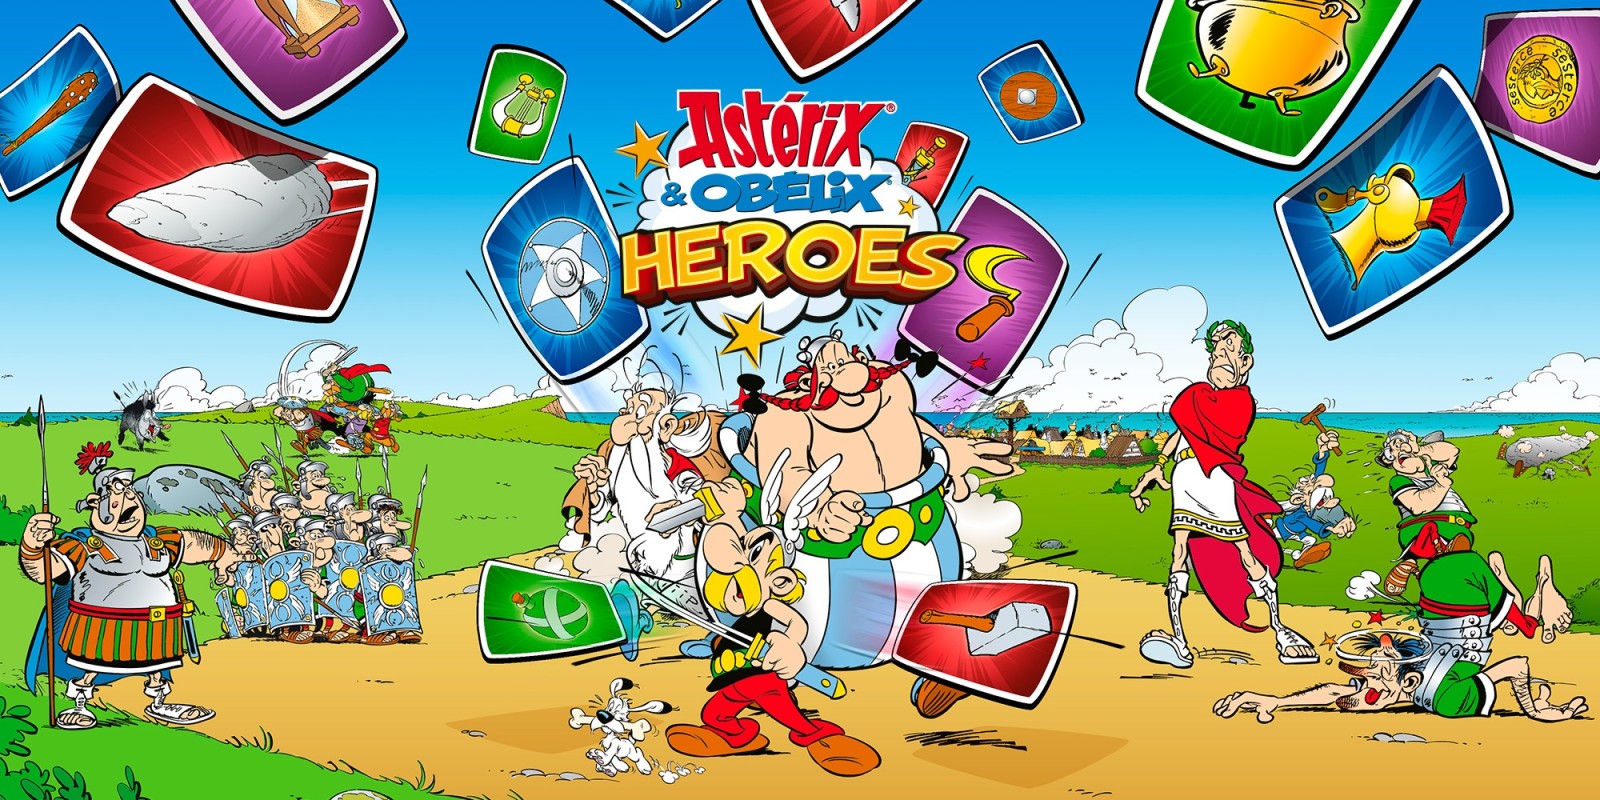 Astérix & Obélix: Heroes